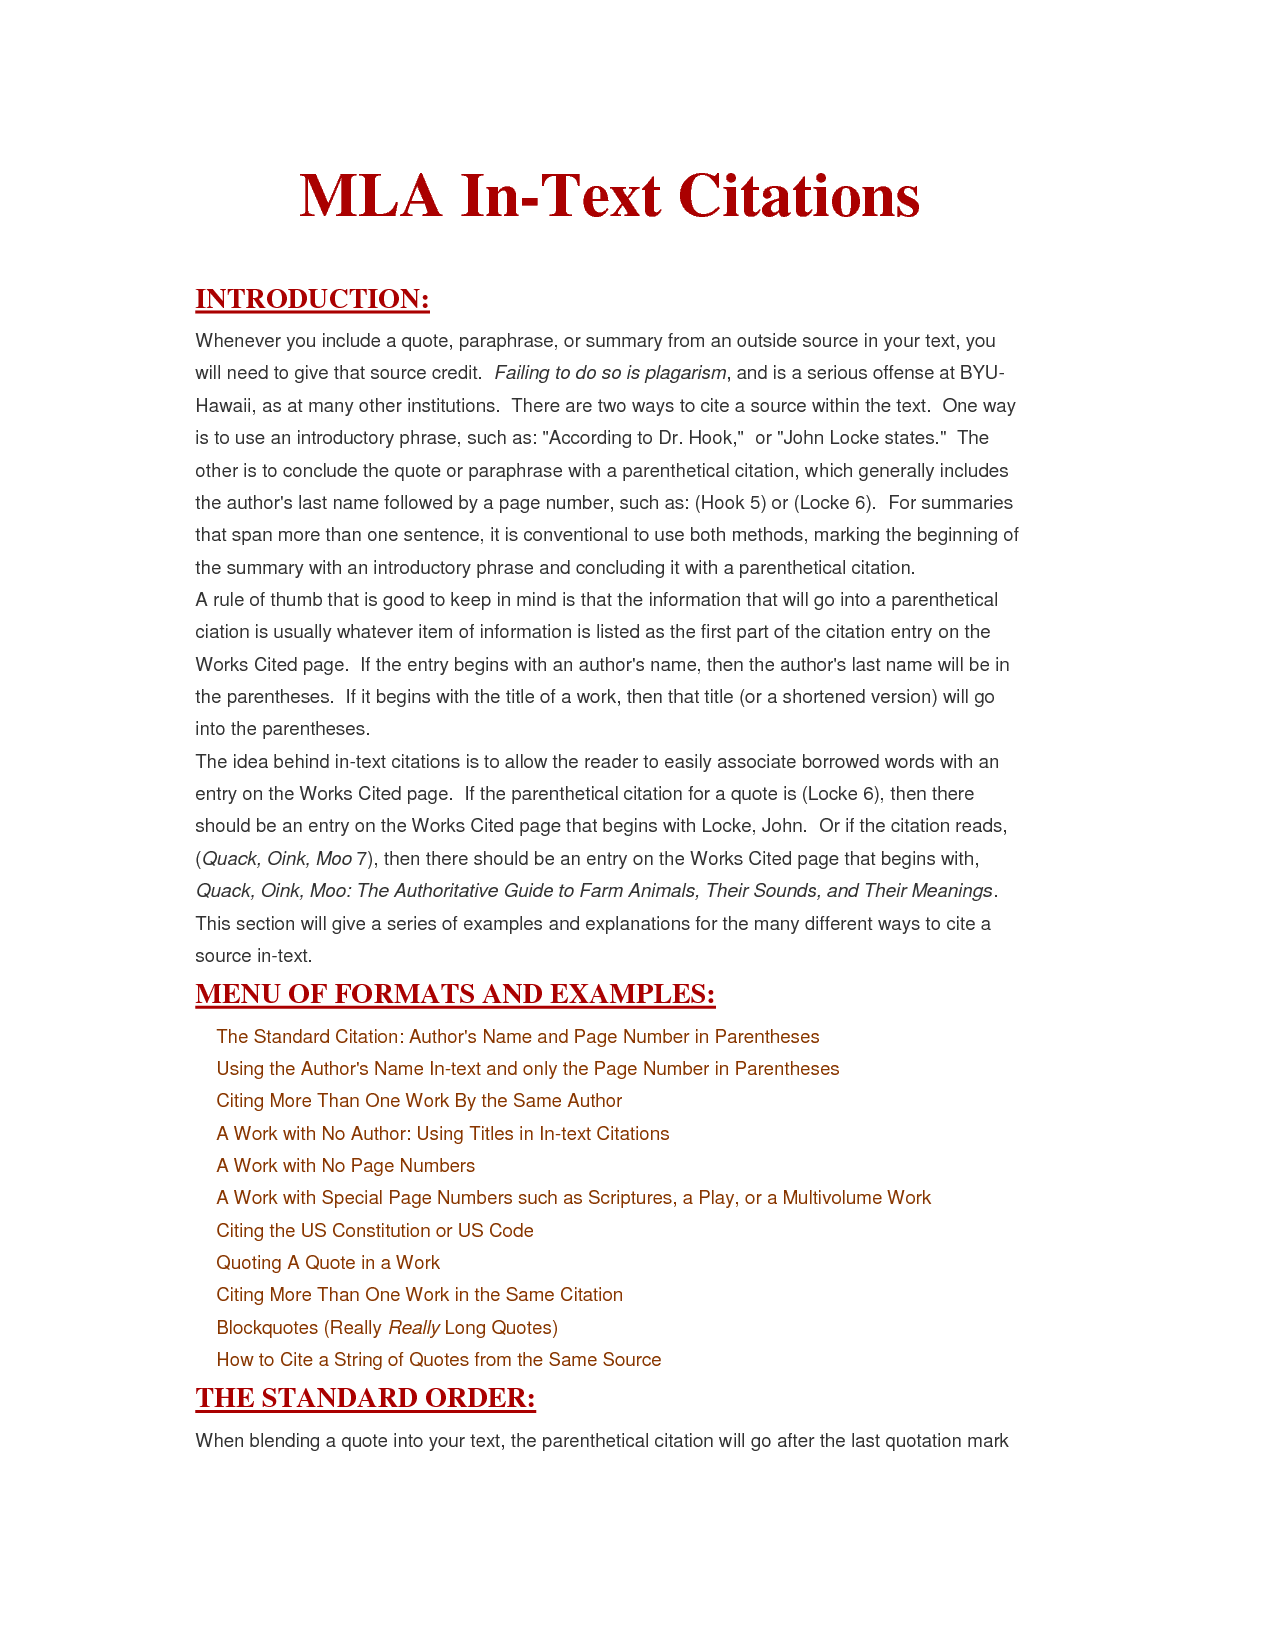 Essays citations mla format